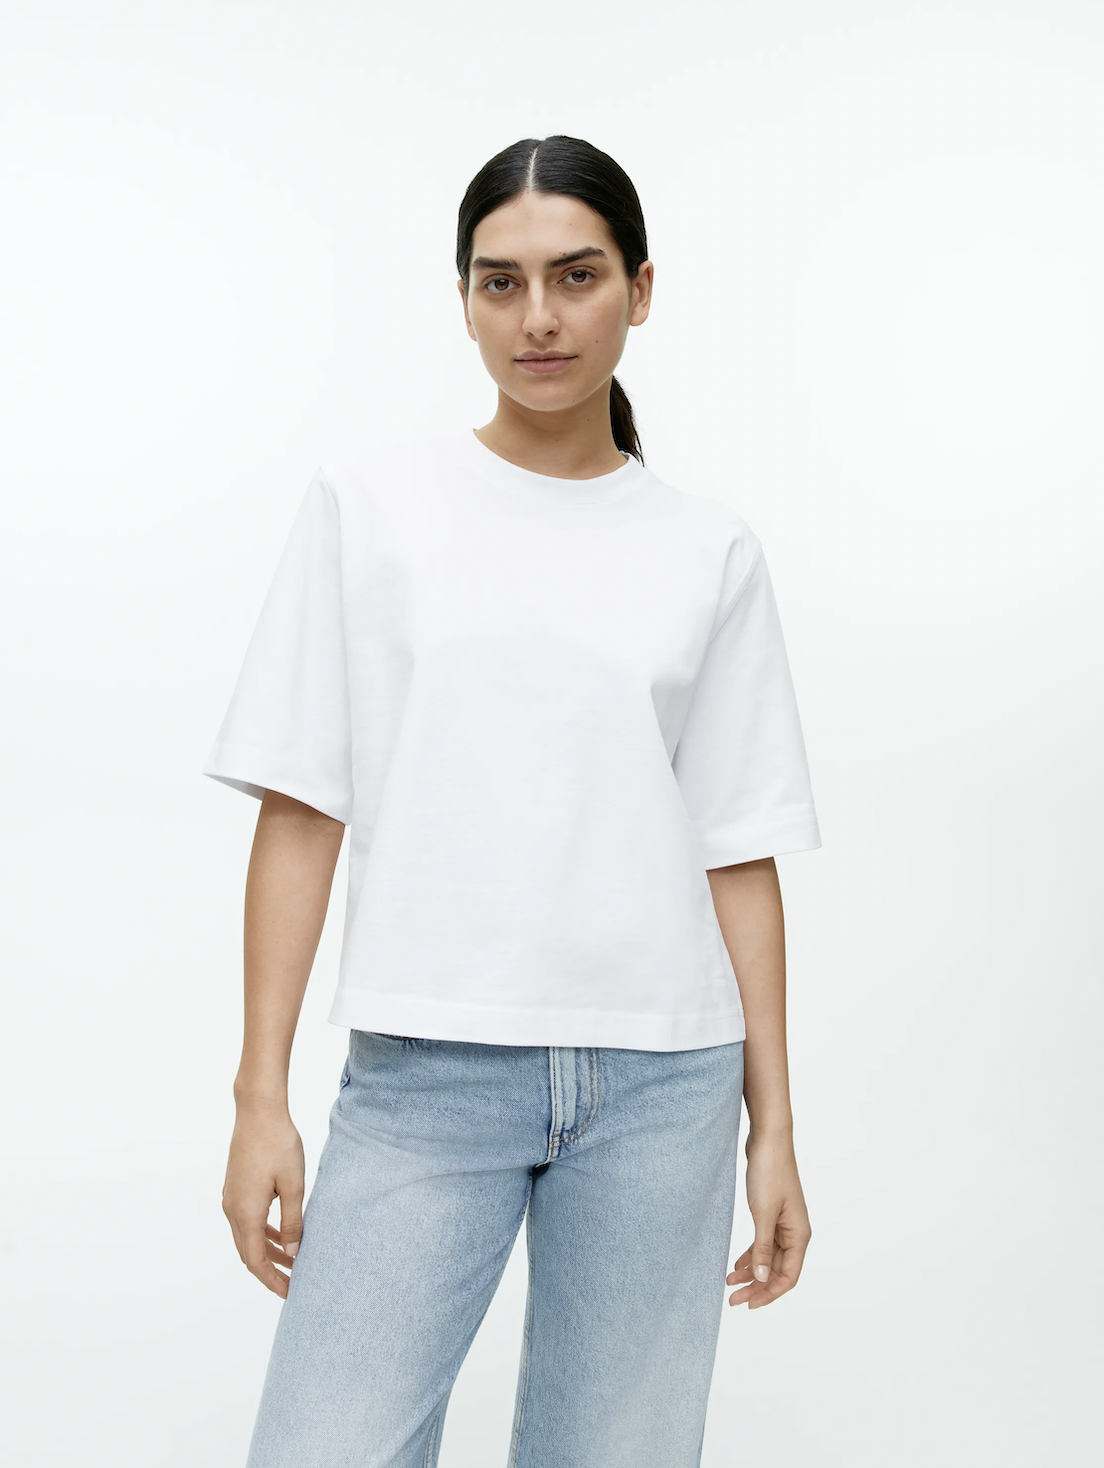 Het perfecte witte T-shirt van Arket